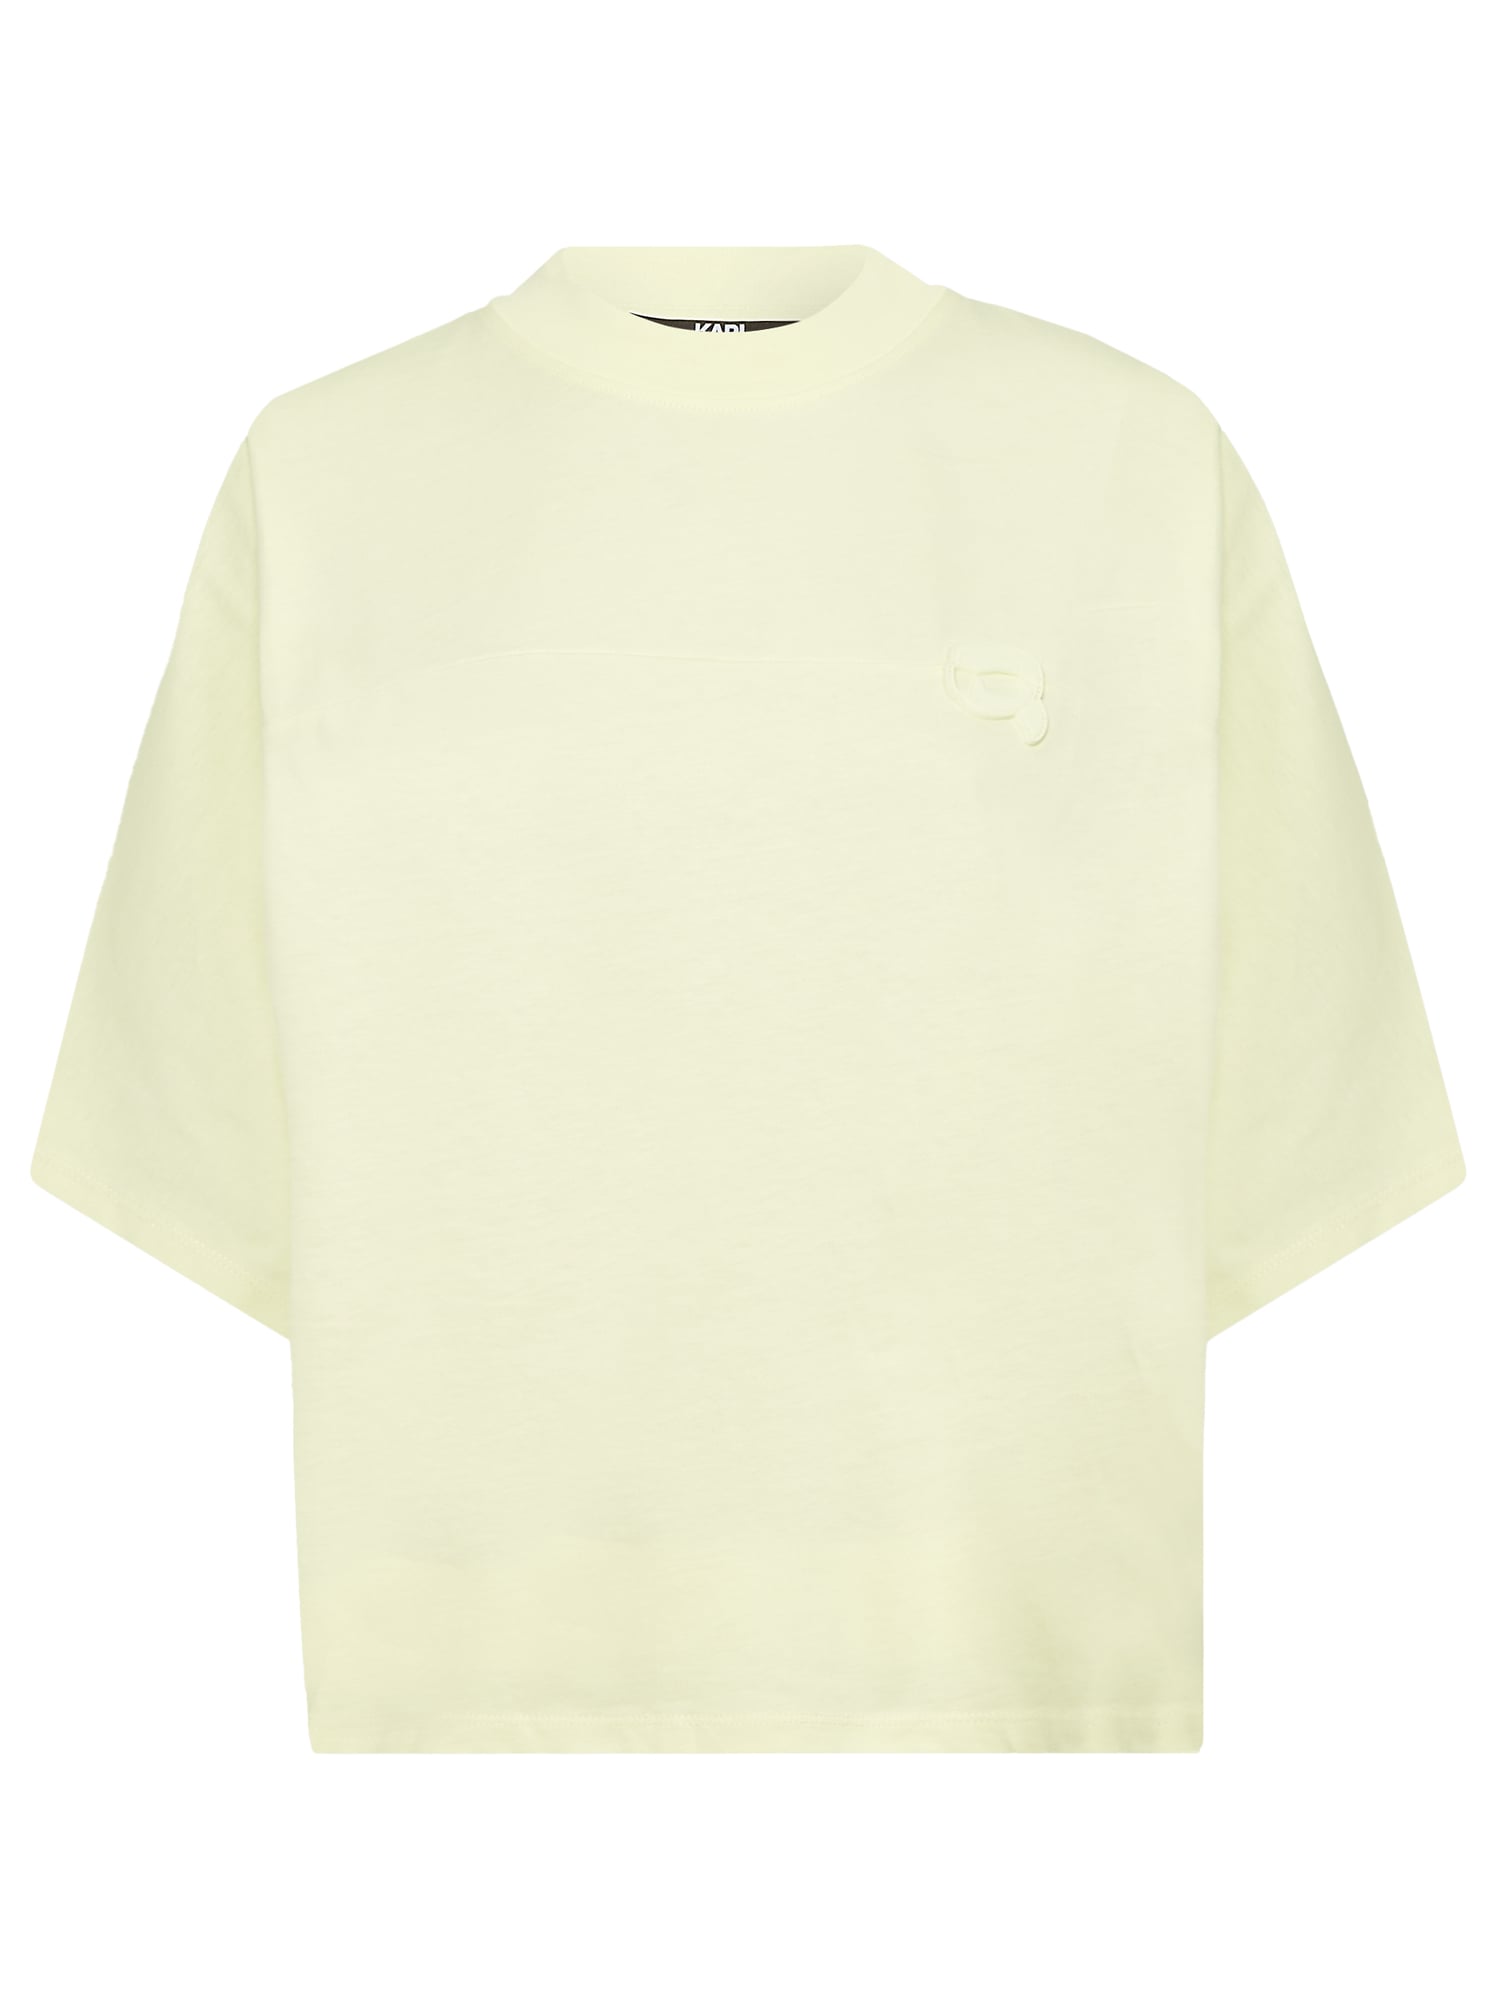 Oversize tričko Ikonik 2.0 limetová Karl Lagerfeld